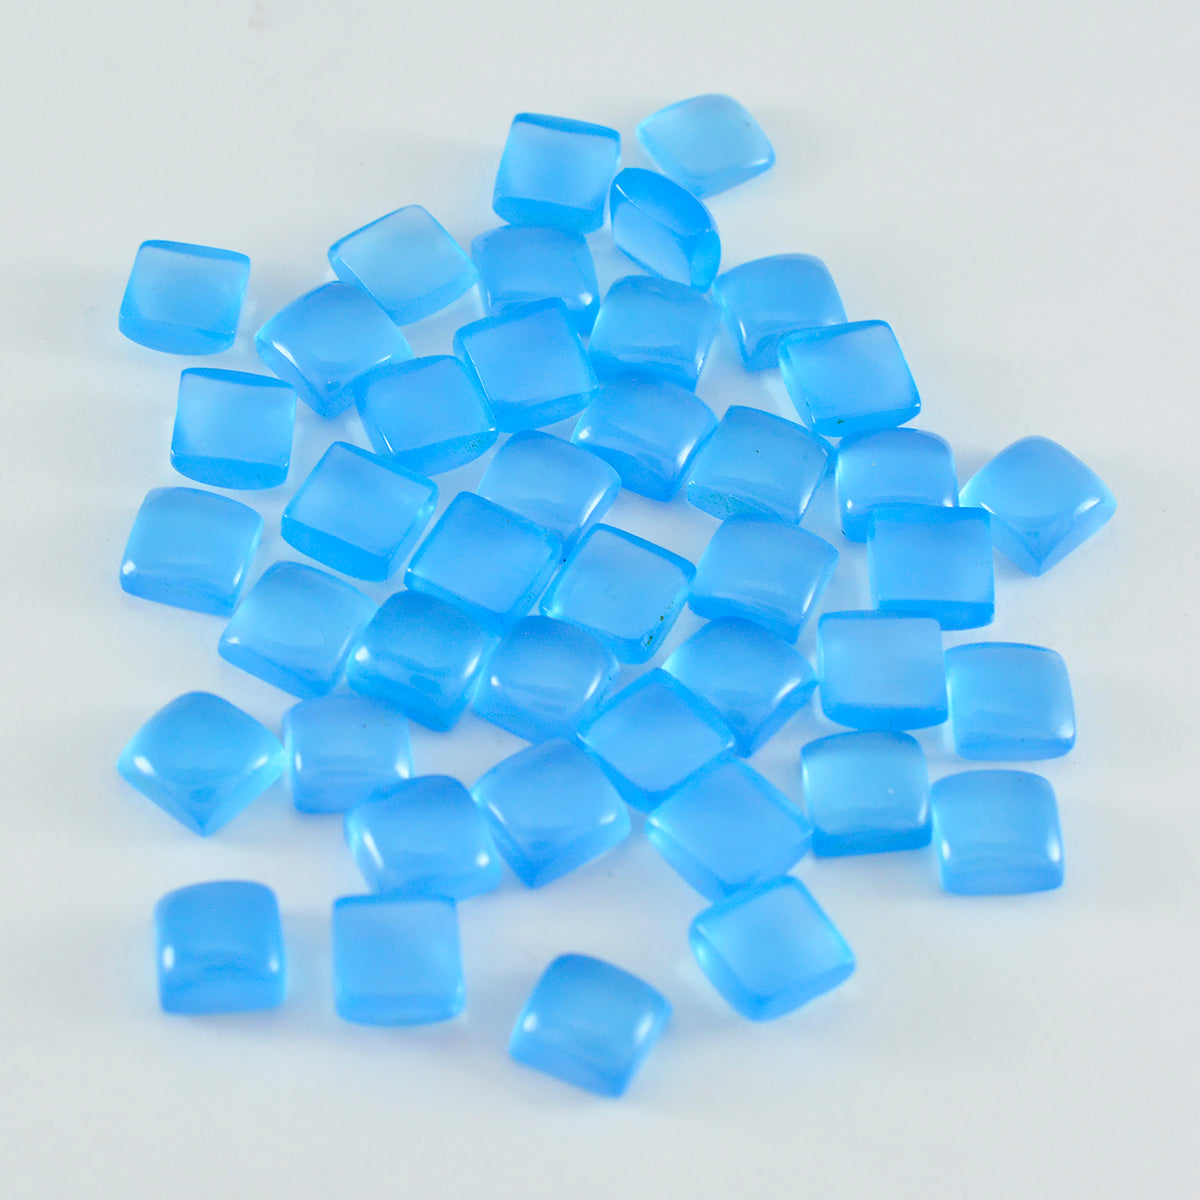 Riyogems 1 cabujón de calcedonia azul de 0.197 x 0.197 in, forma cuadrada, piedra preciosa suelta de buena apariencia